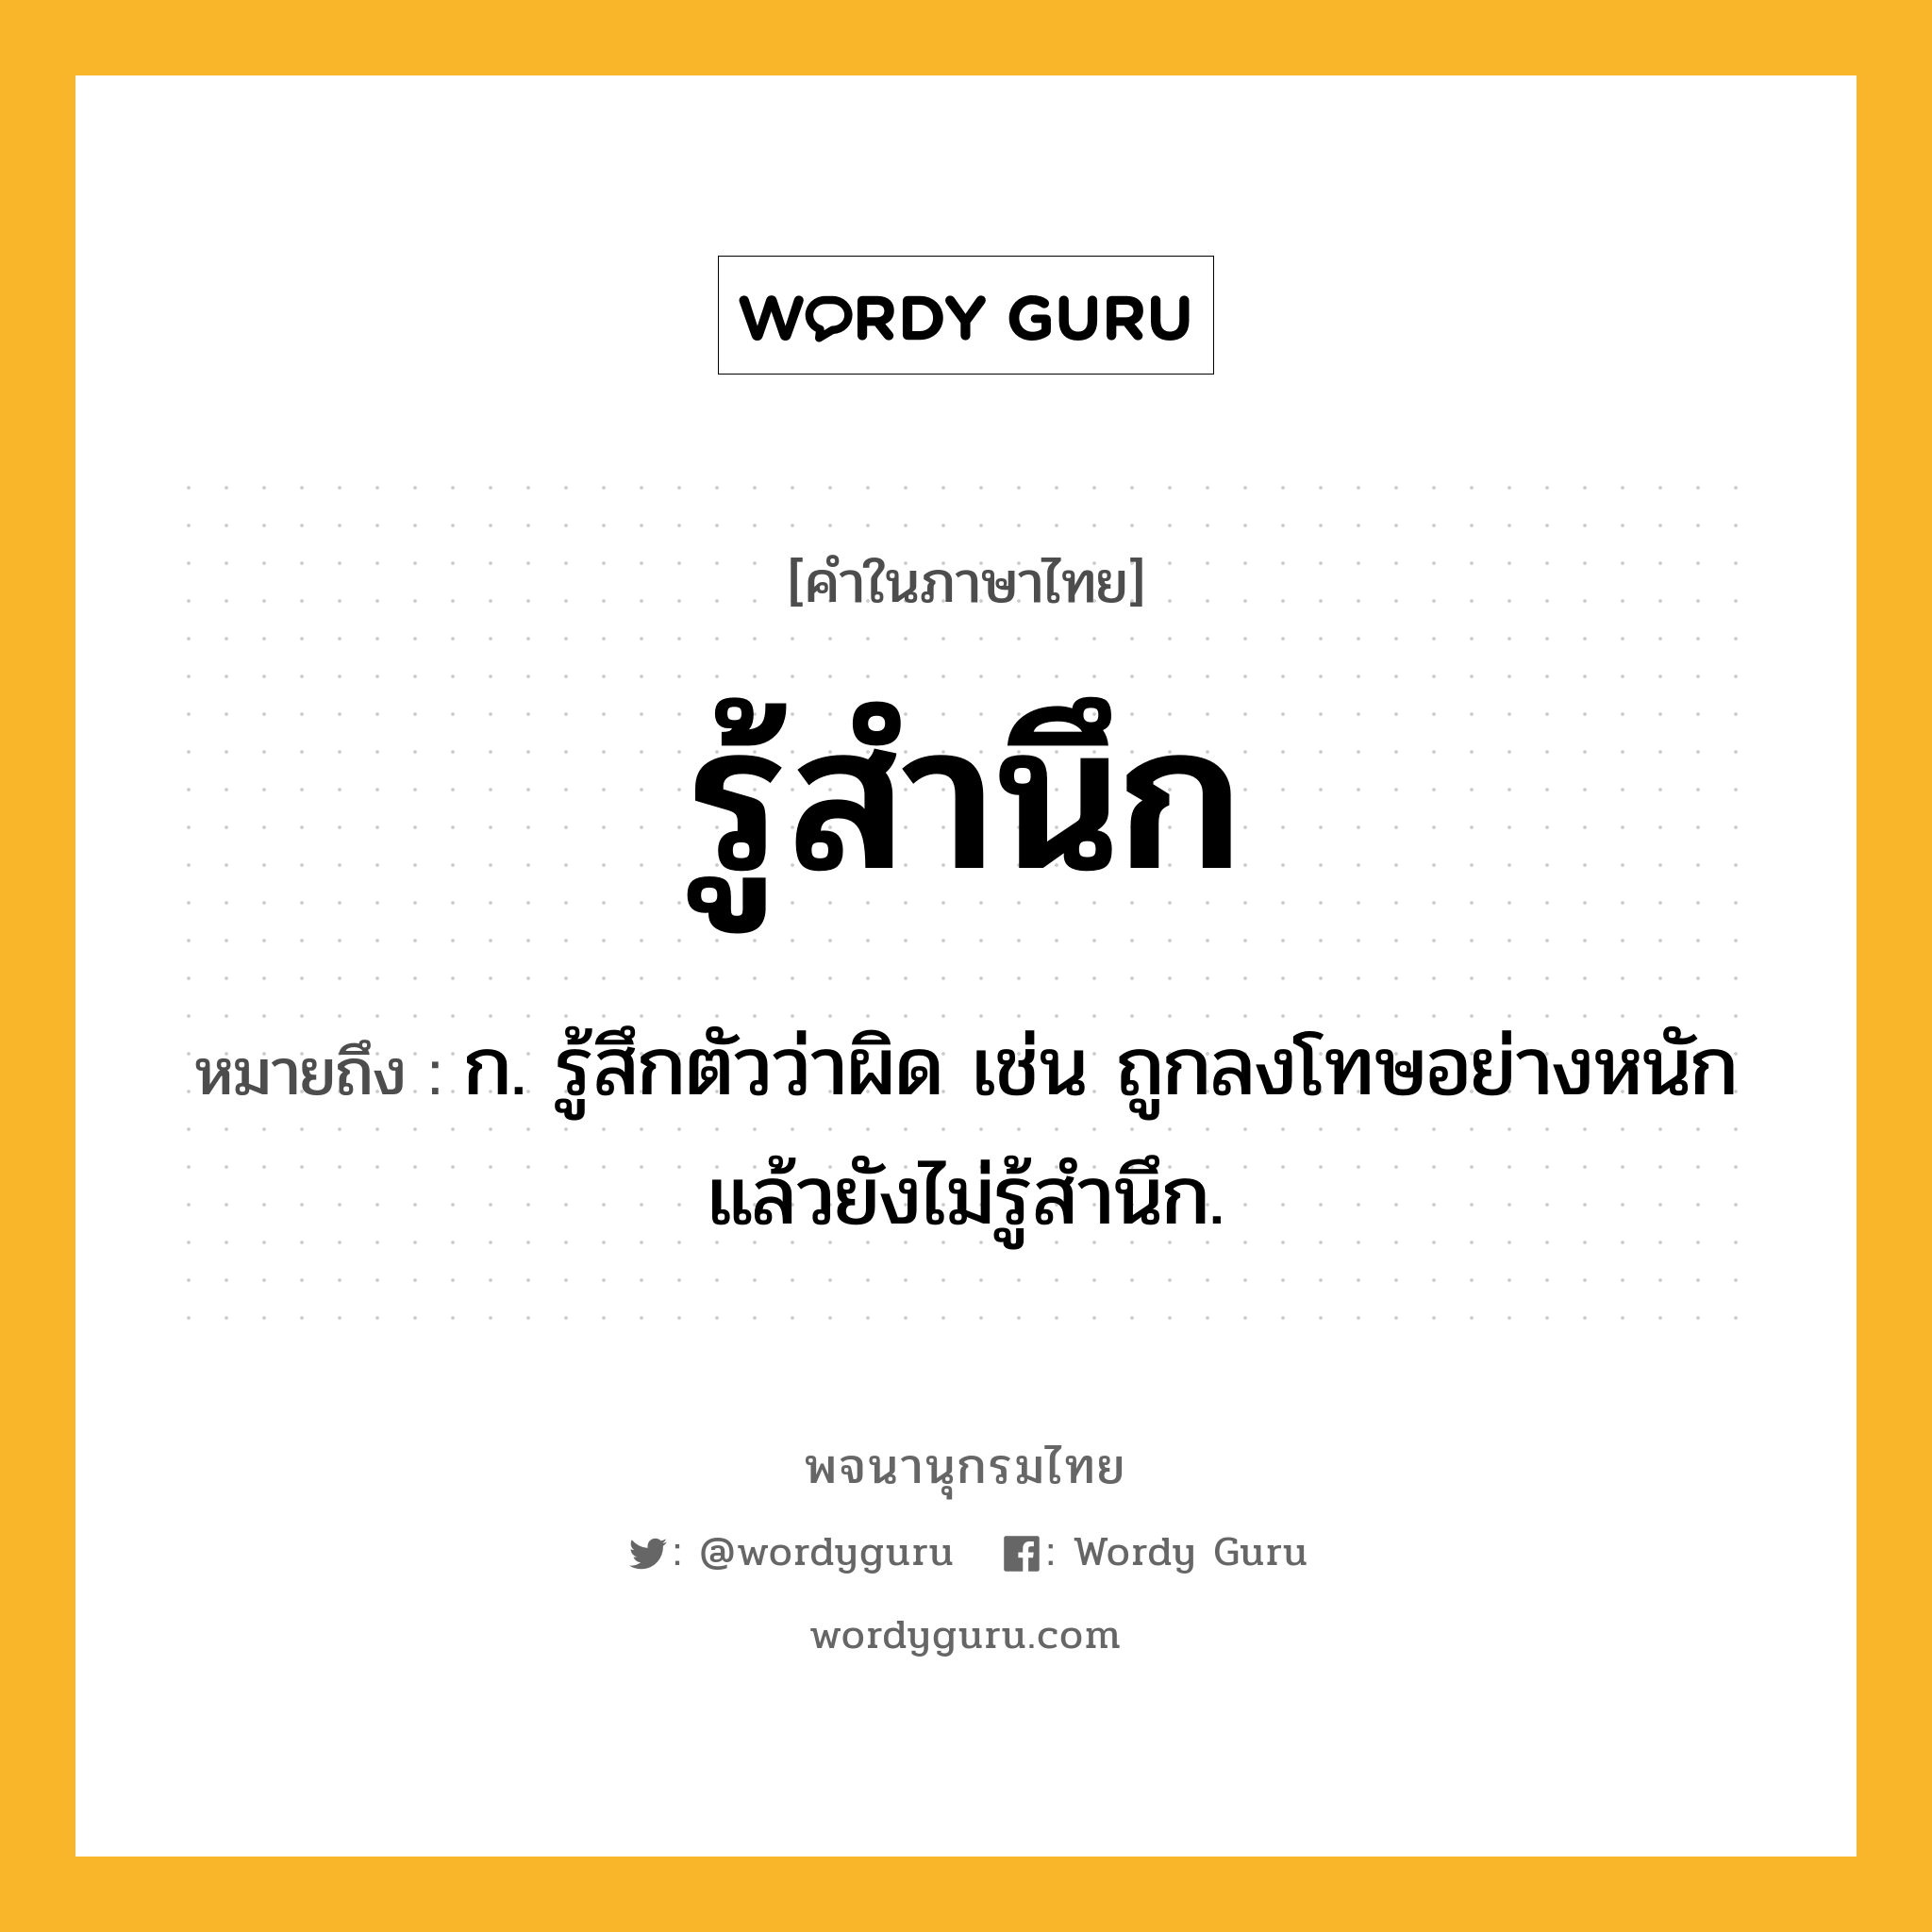 รู้สำนึก หมายถึงอะไร?, คำในภาษาไทย รู้สำนึก หมายถึง ก. รู้สึกตัวว่าผิด เช่น ถูกลงโทษอย่างหนักแล้วยังไม่รู้สำนึก.